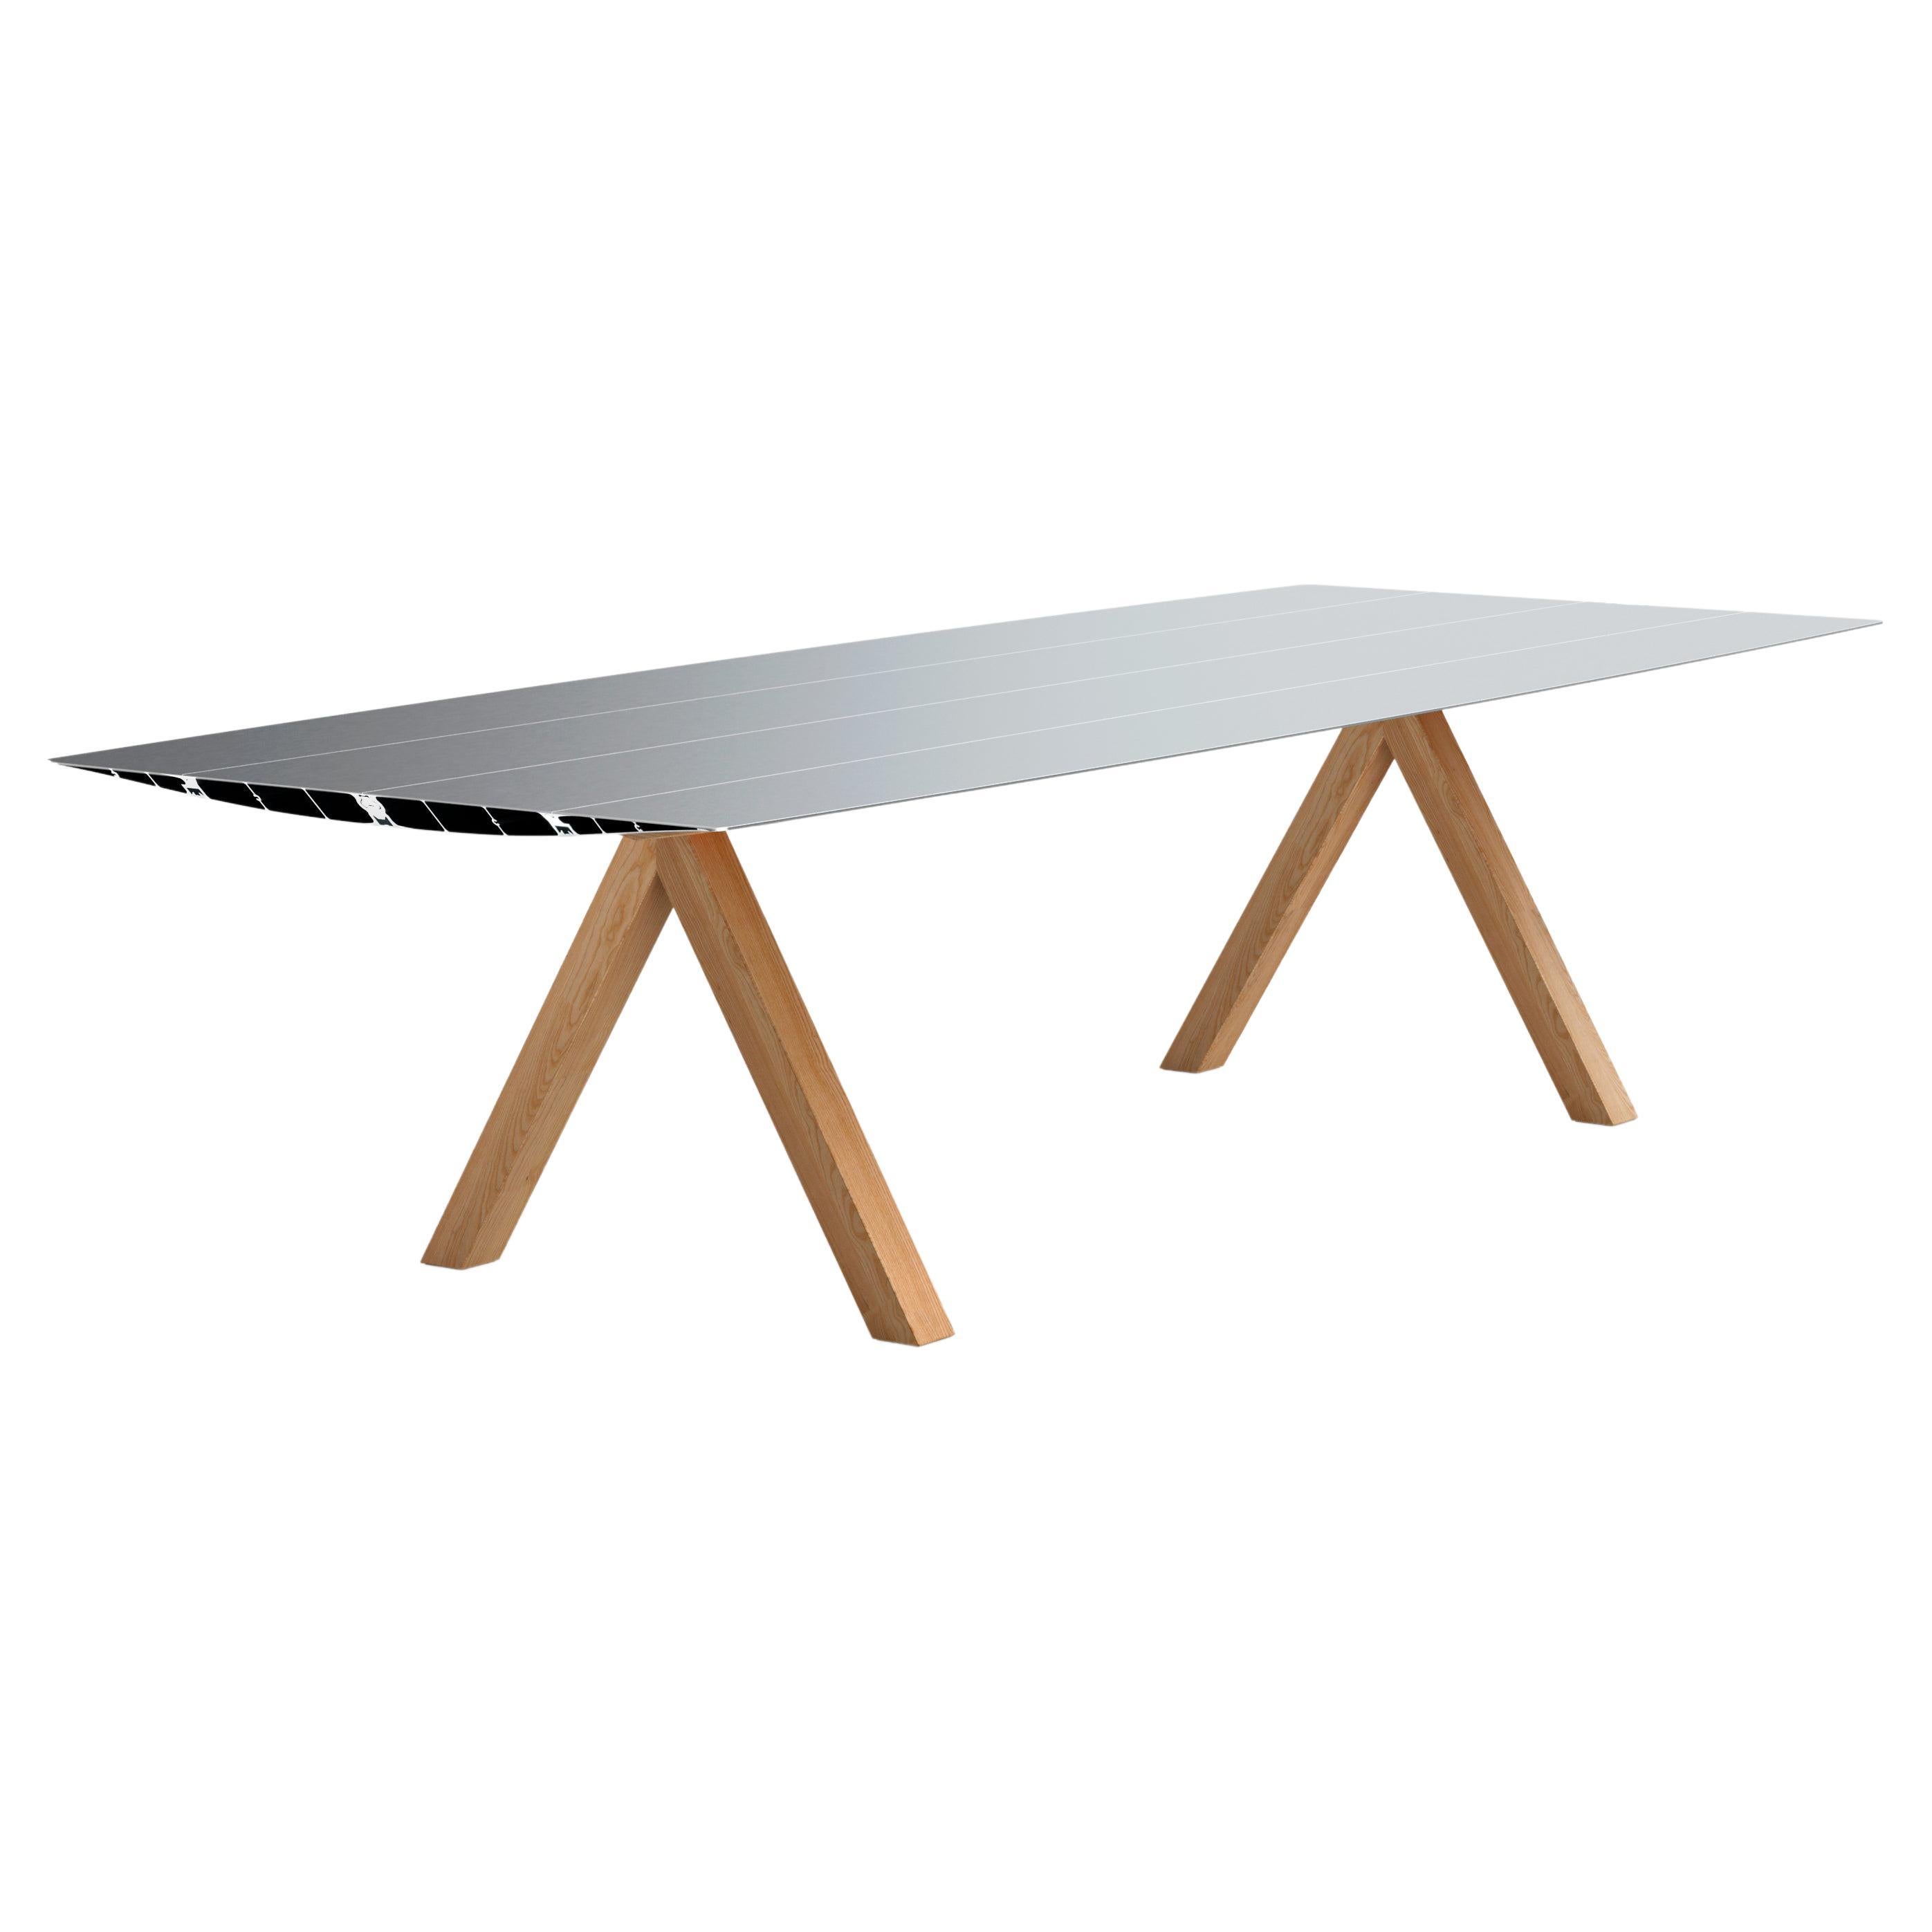 Table de salle à manger / bureau contemporain en aluminium pour l'intérieur et l'extérieur, pieds en bois 